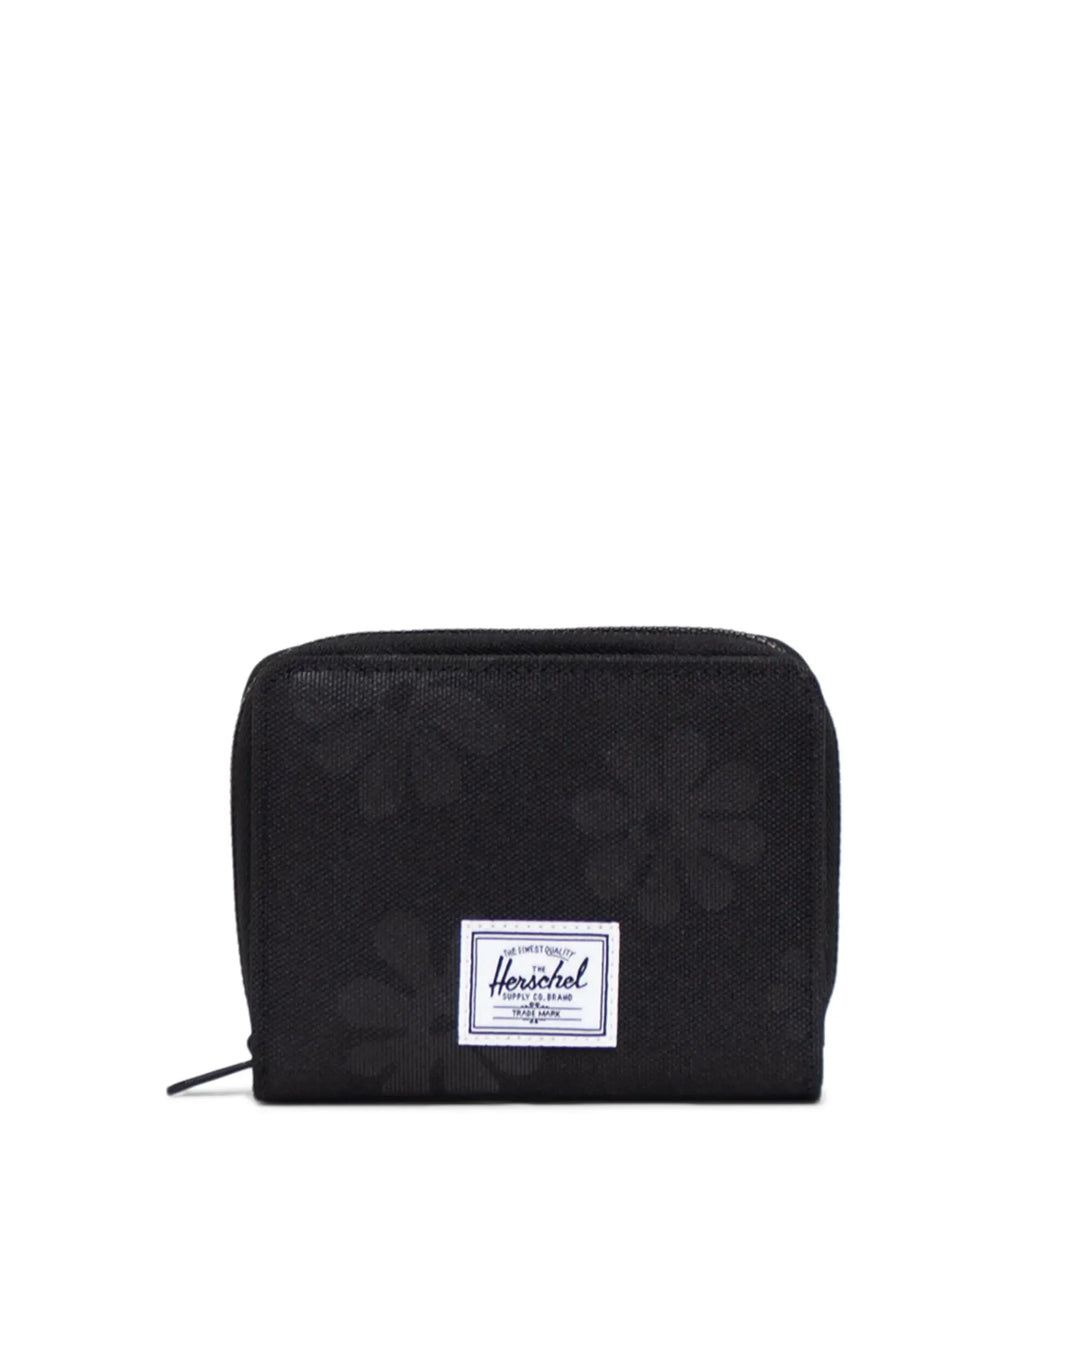 Herschel Supply Co Georgia Wallet - Black Floral Sun - Sun Diego Boardshop